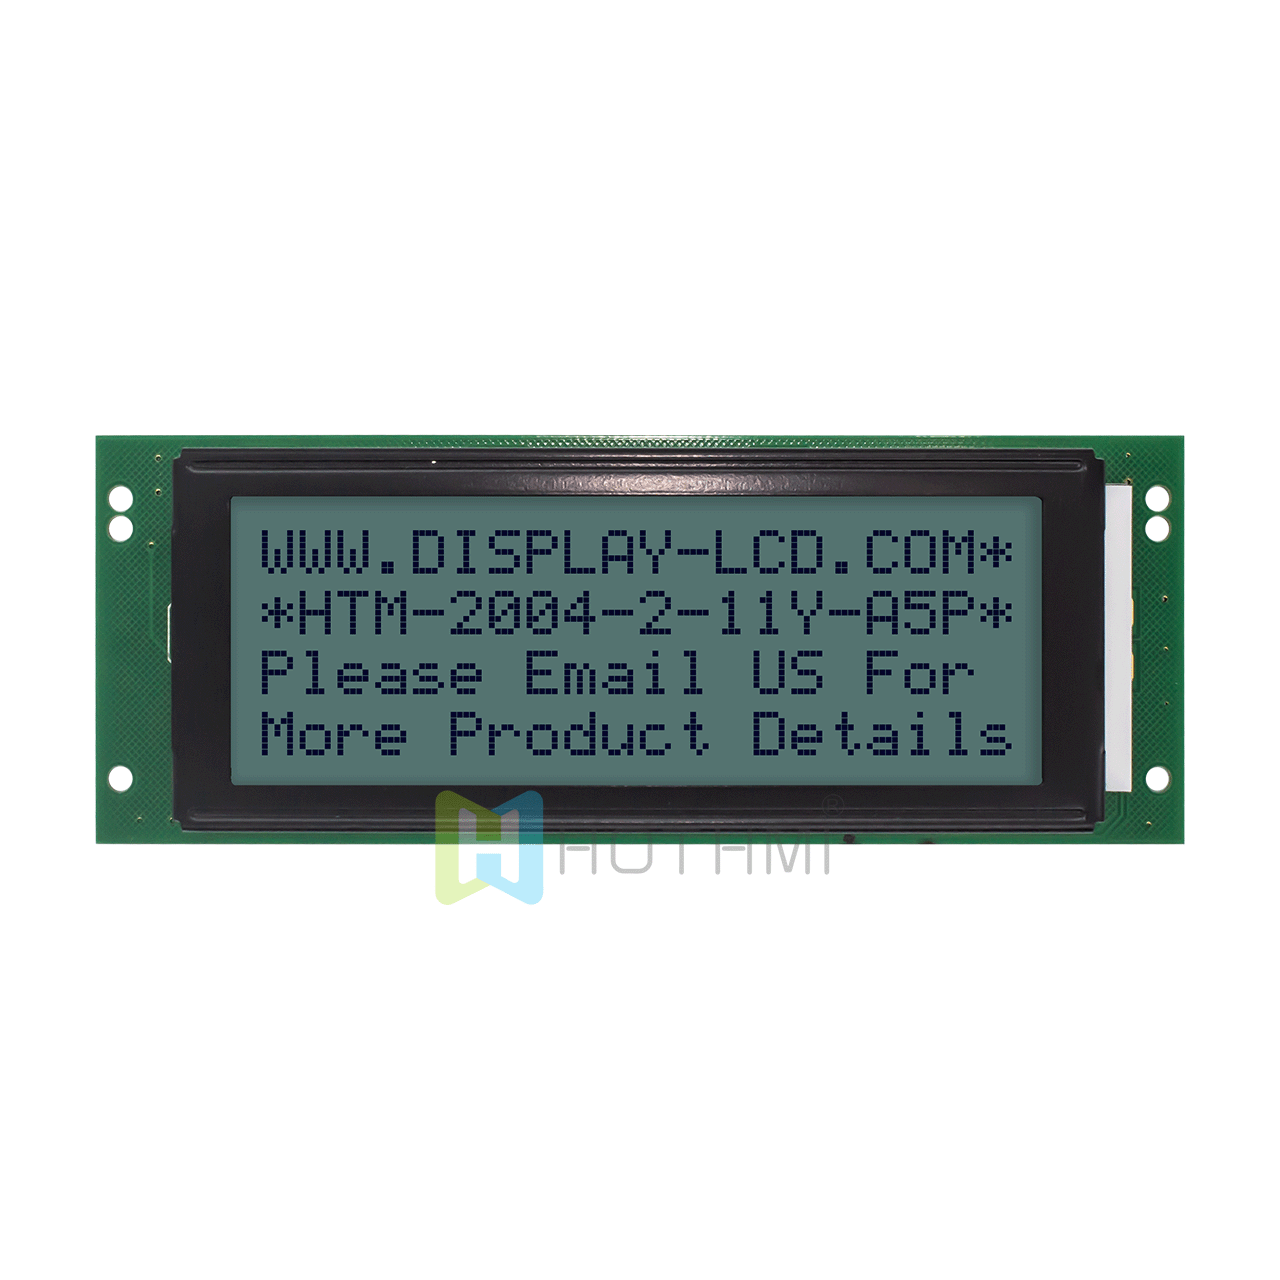 4X20 单色字符液晶显示屏/ STN+灰显示屏/带黄绿背光 /Arduino显示屏/半透反射式液晶显示屏/5.0v